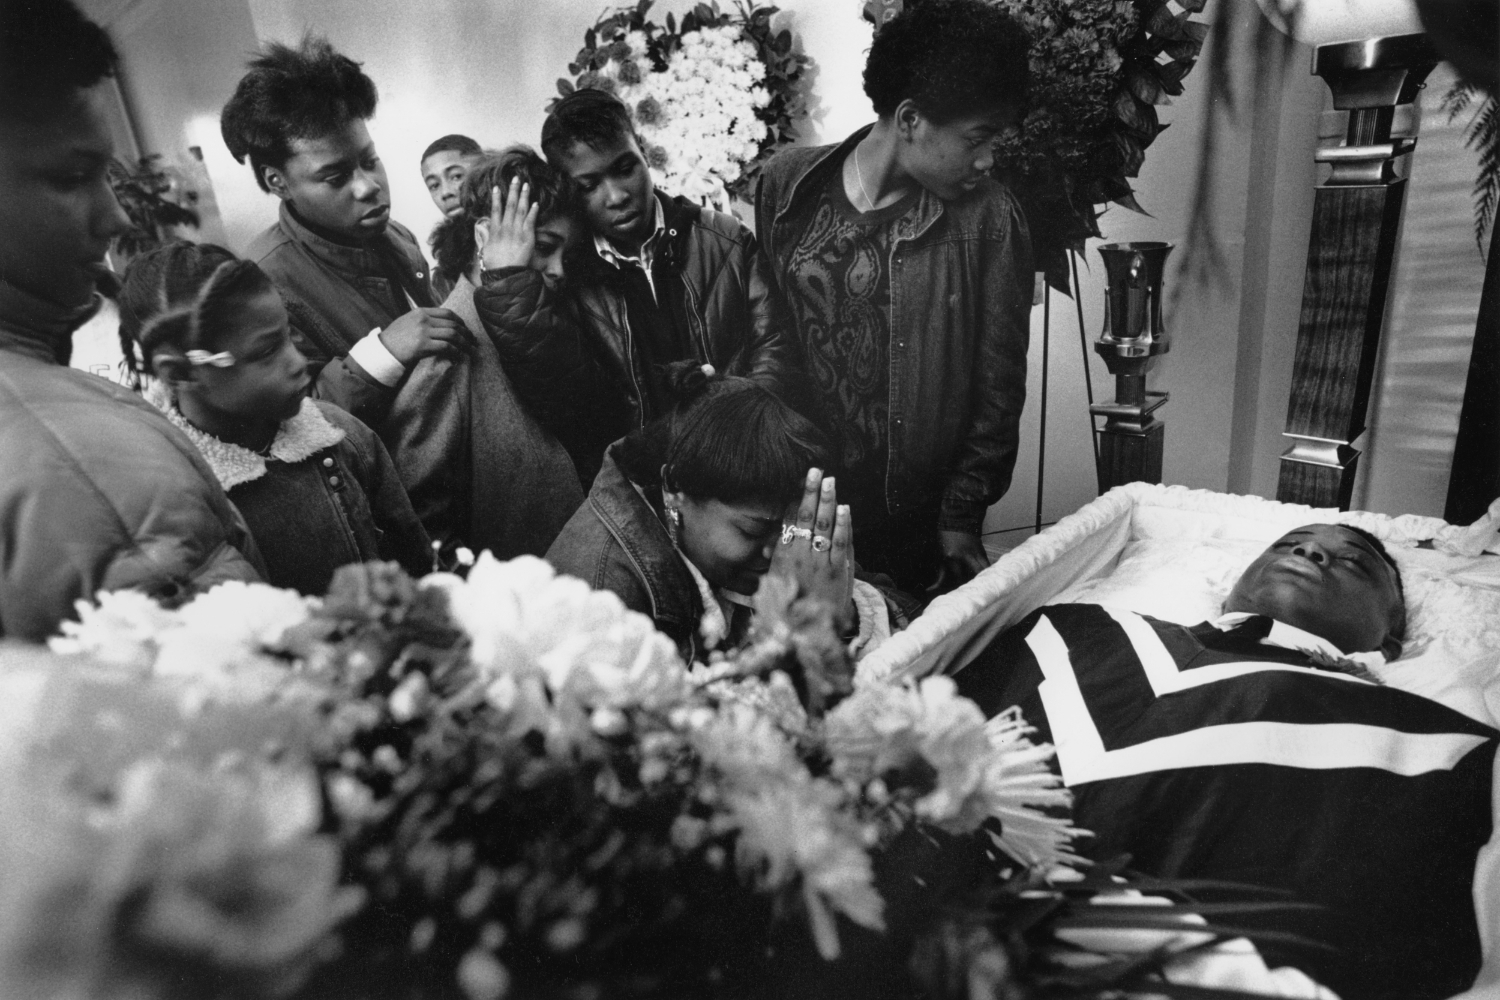   Killed for his coat  Brooklyn, NY. 1988 